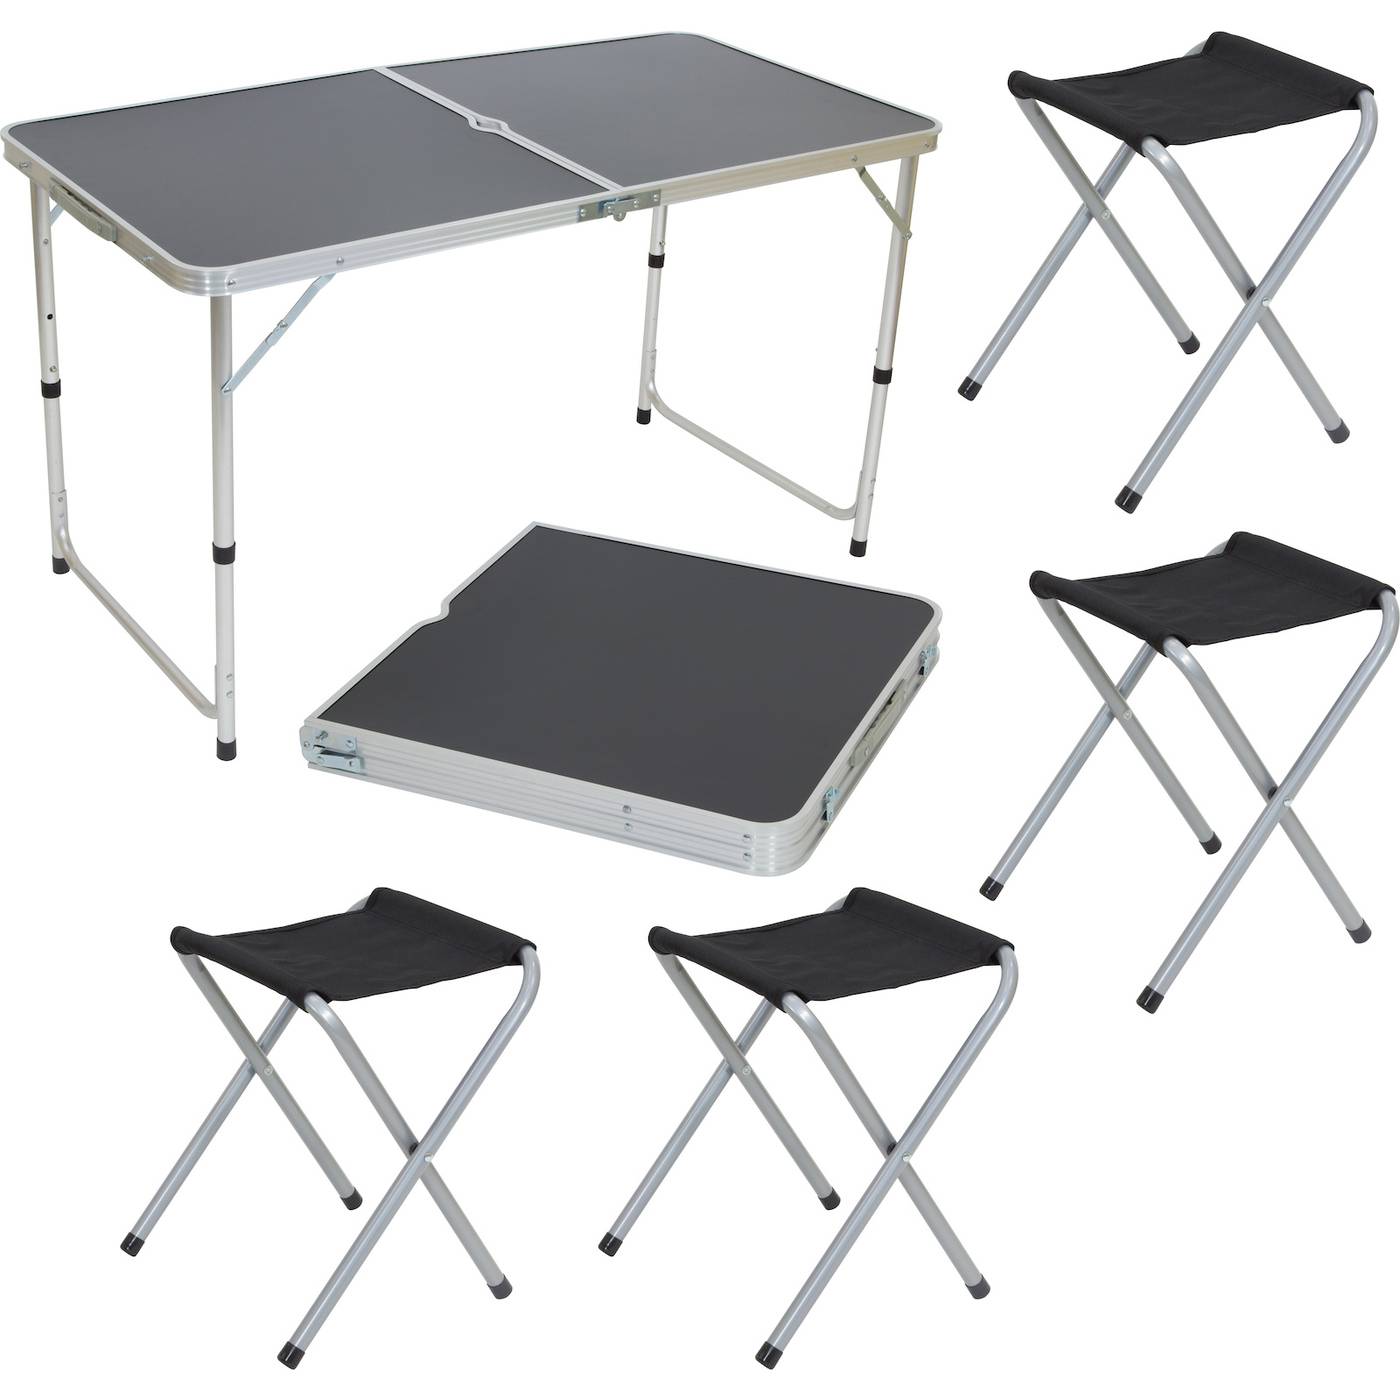 Купить раскладную мебель. Экос cho-150-e комплект "пикник" (стол и 4 стула ) черный (992992). Набор мебели Atemi ATS-400. Стол складной GH 404 Ecos. Комплект Ecos пикник cho-150-e.